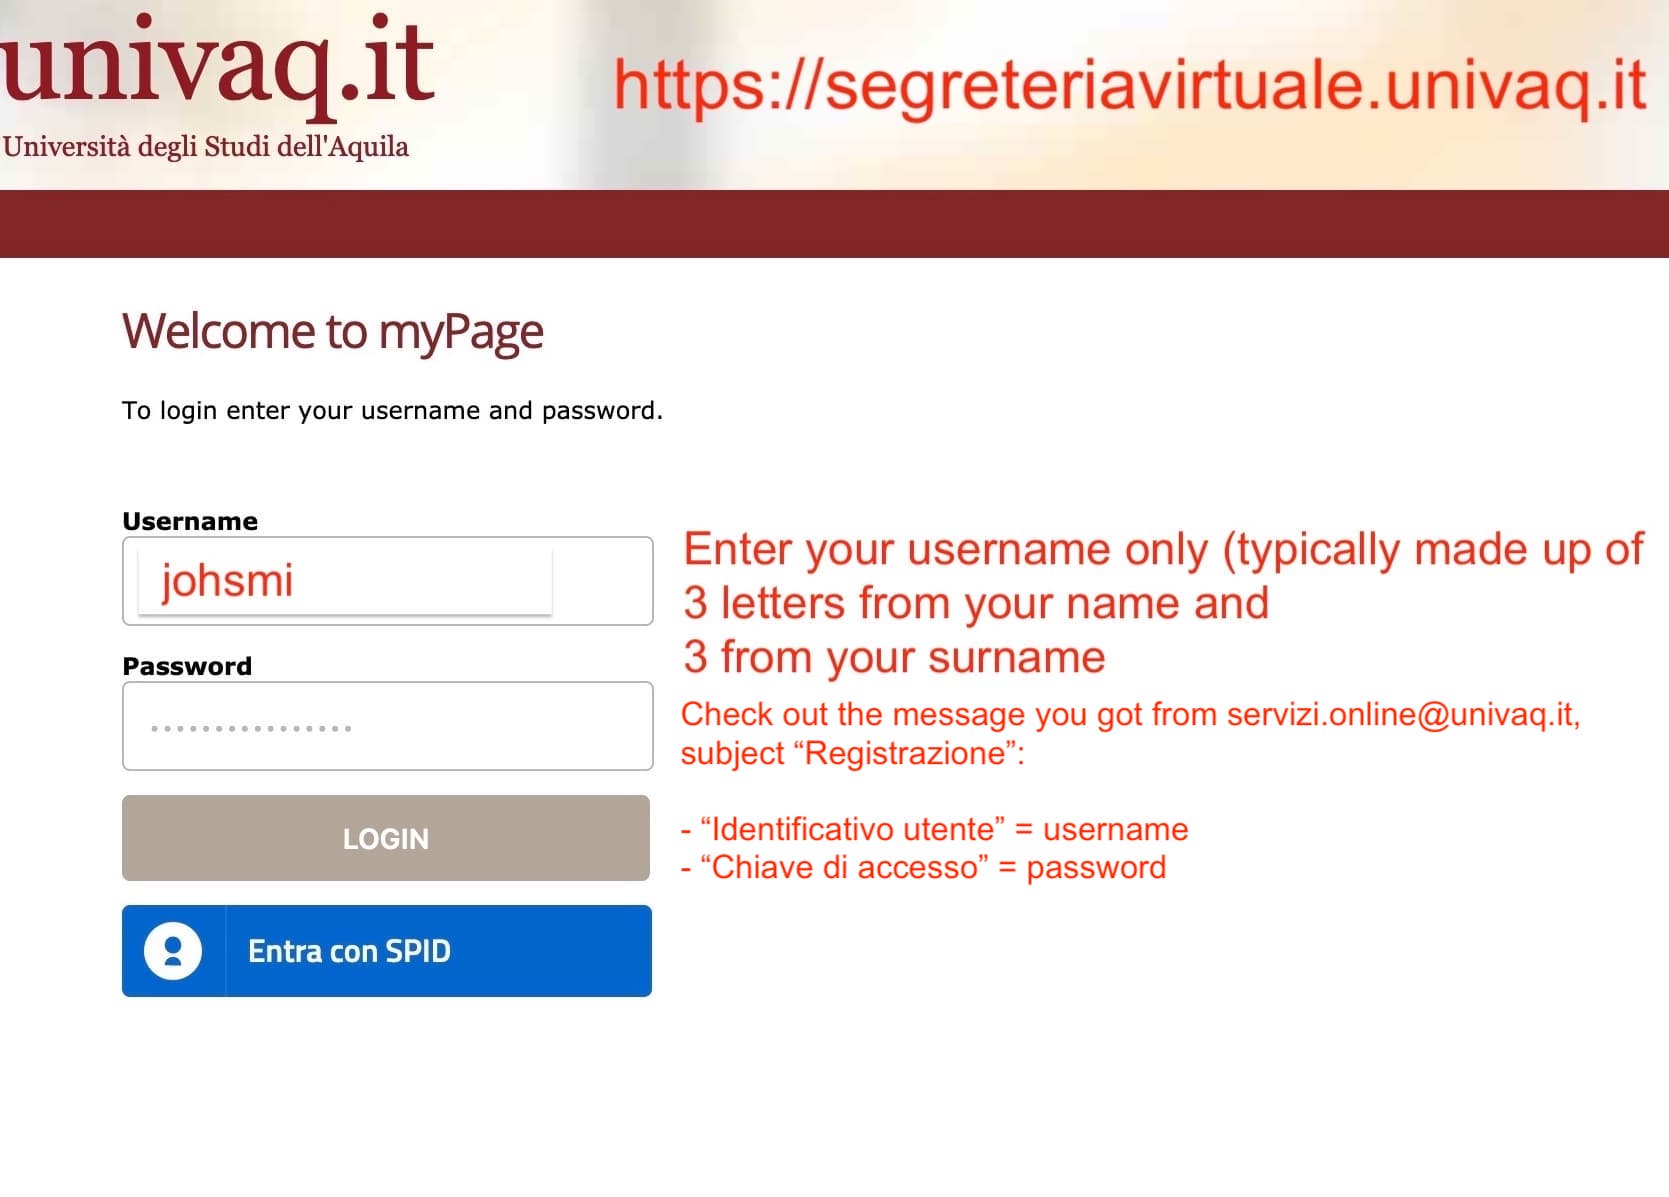 2 - Sign in on Segreteria Virtuale